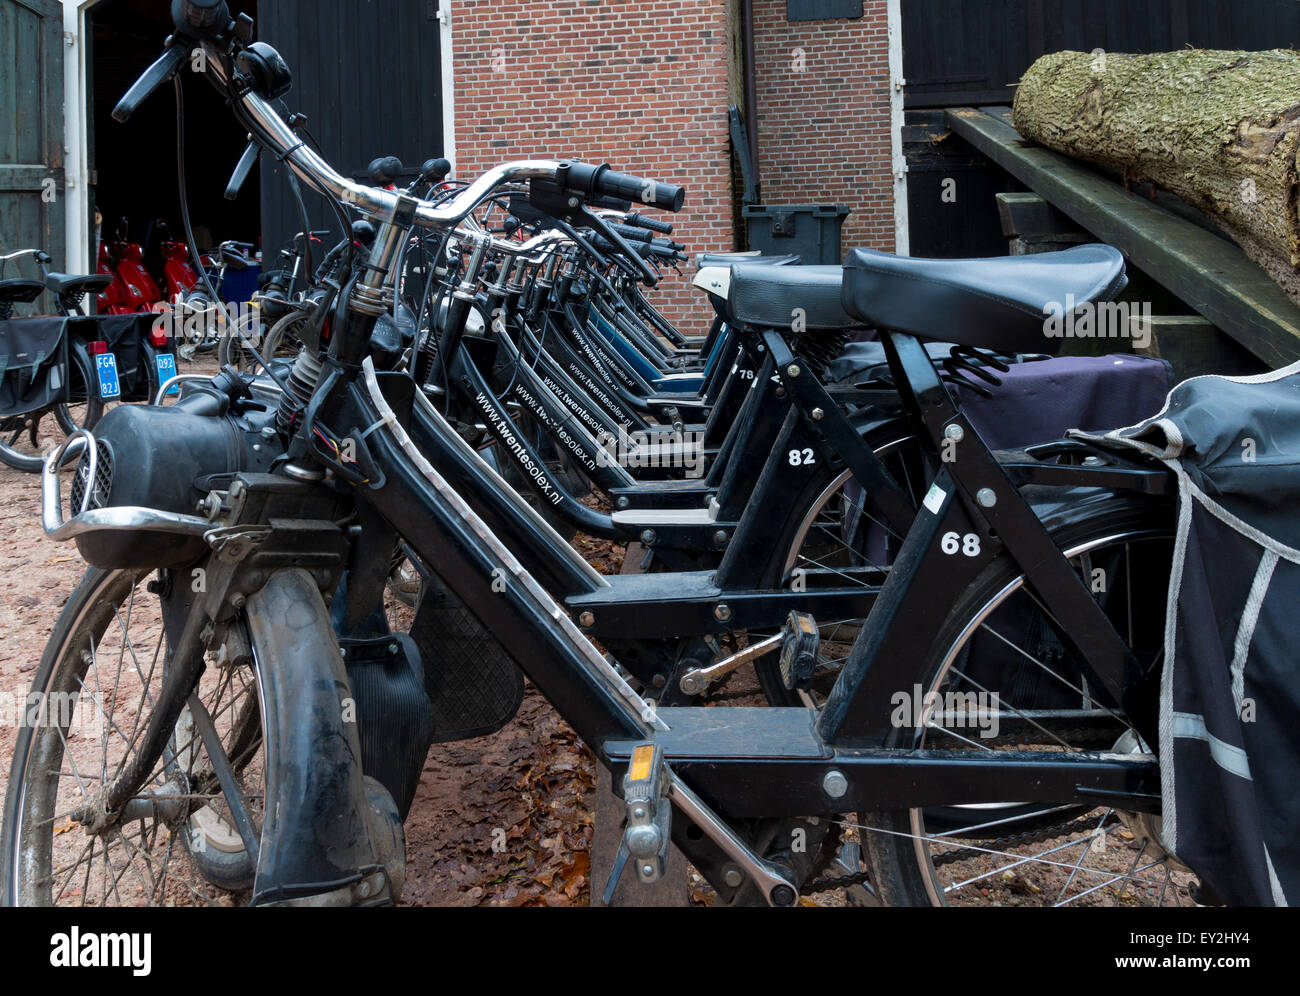 DENEKAMP, Niederlande - 15. November 2014: Reihe von Vintage Solex Moped zu mieten. Die Mopeds wurden zwischen 1946 und 1988 produziert. Stockfoto